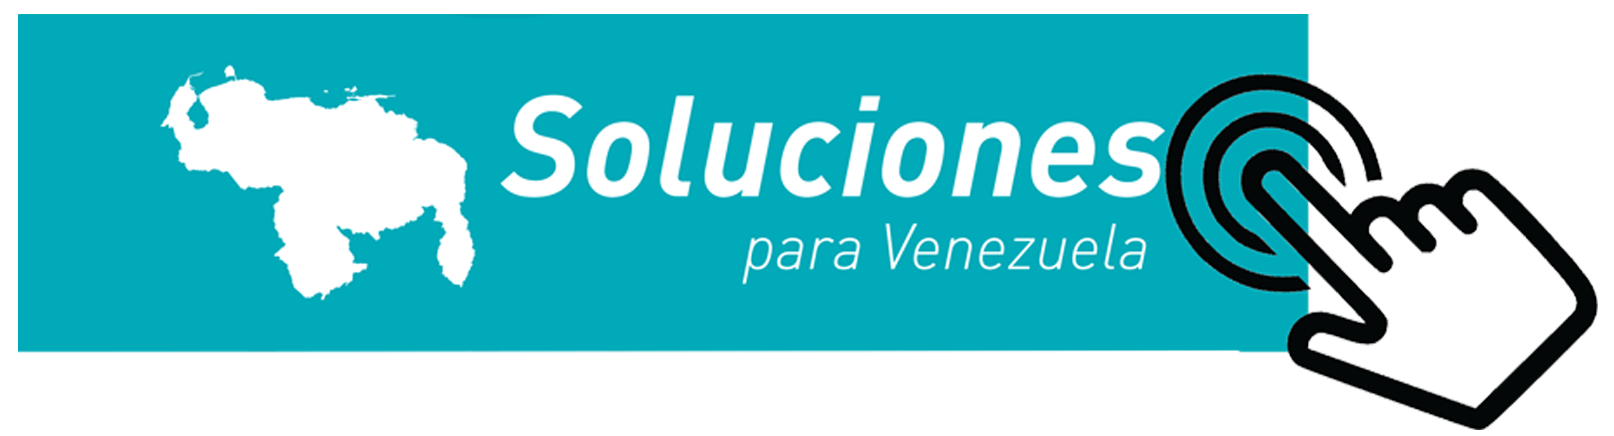 Soluciones para Venezuela